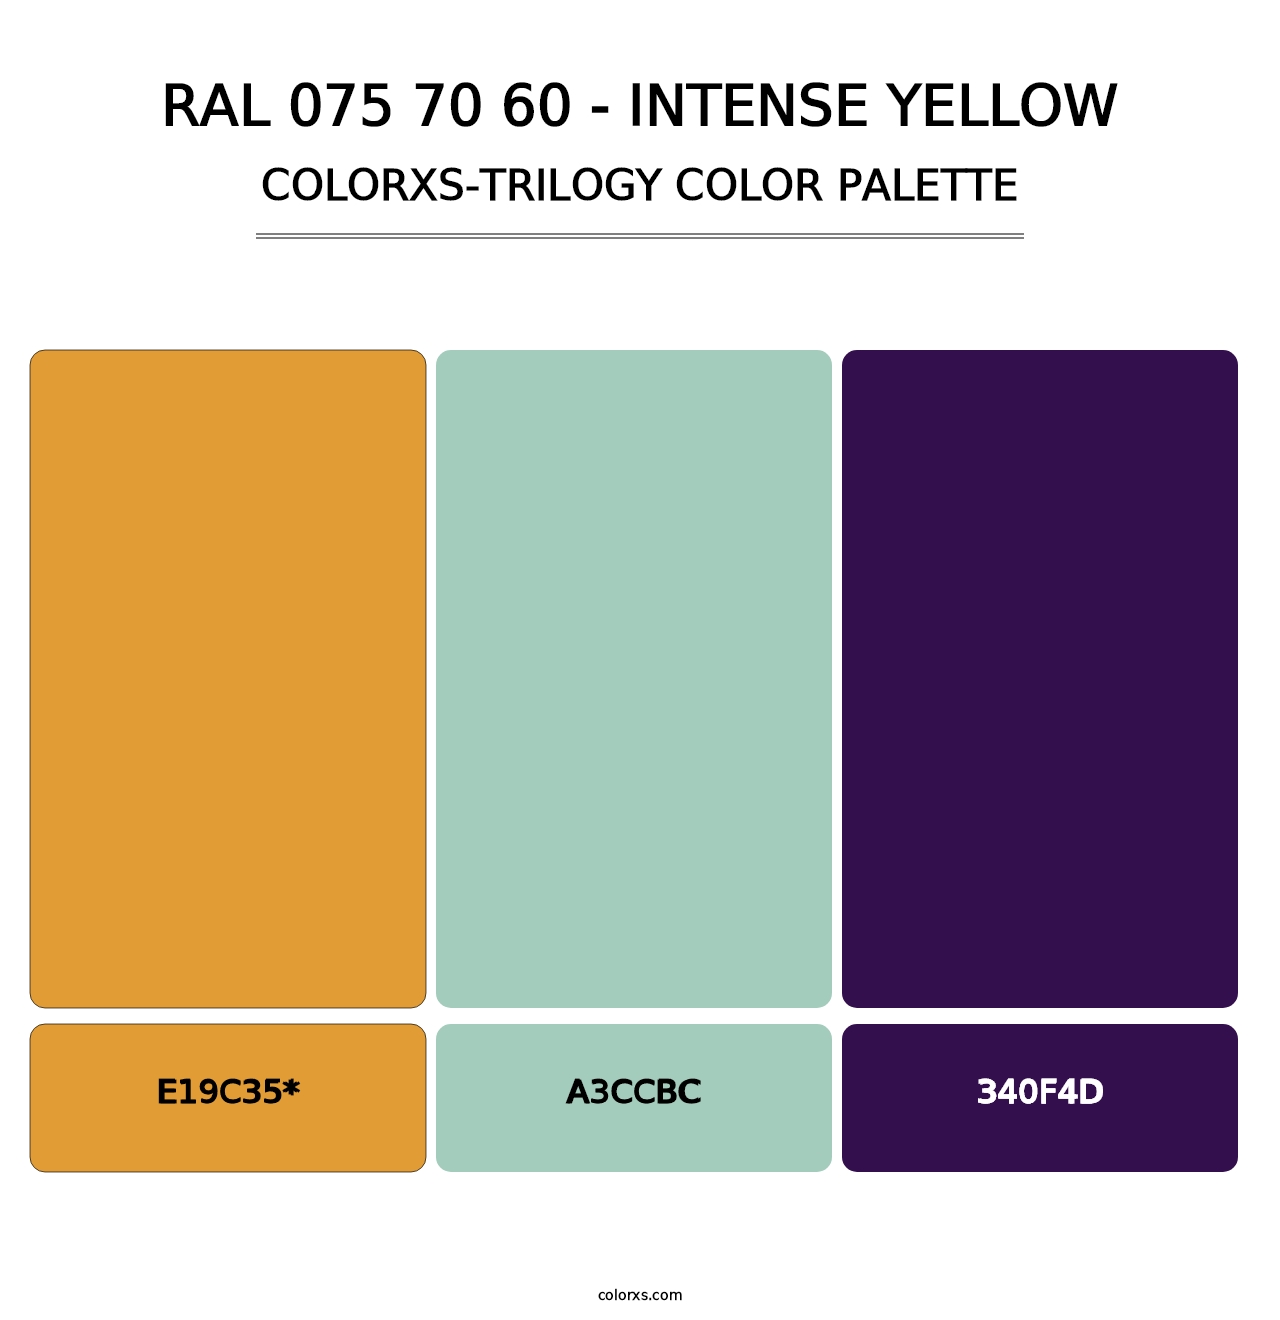 RAL 075 70 60 - Intense Yellow - Colorxs Trilogy Palette